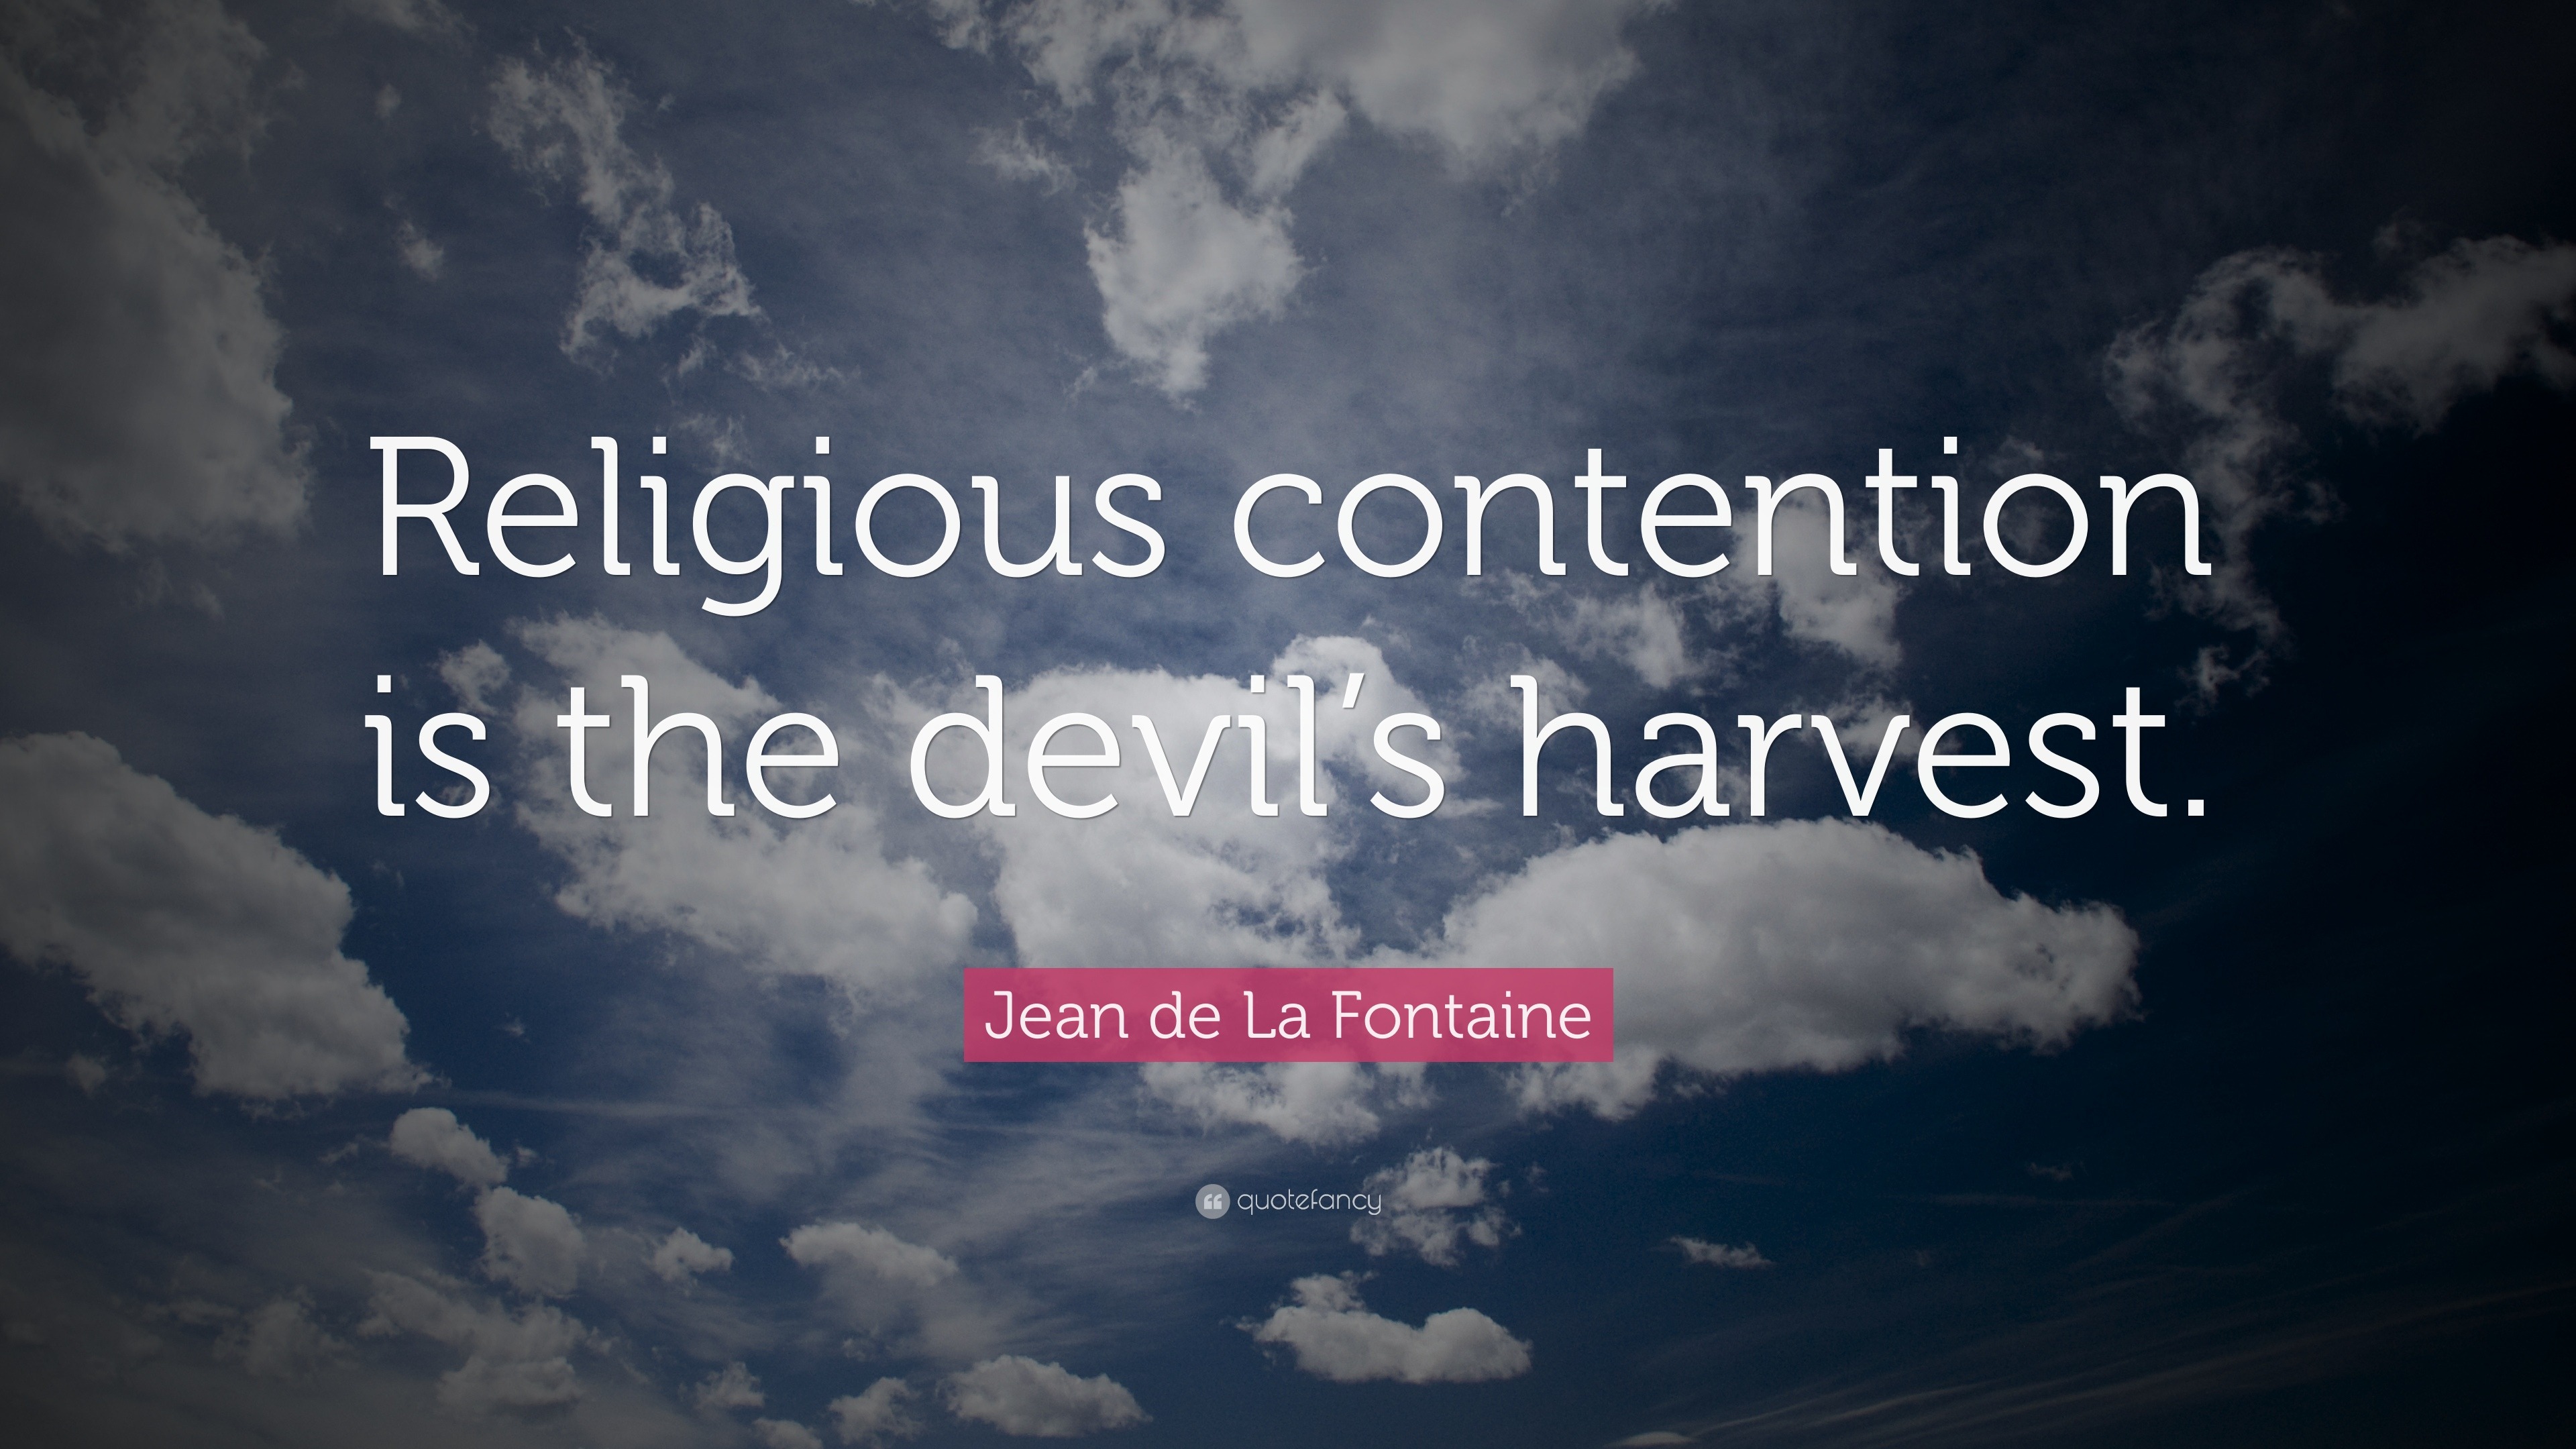 Jean de La Fontaine Quote: “Religious contention is the devil’s harvest.”